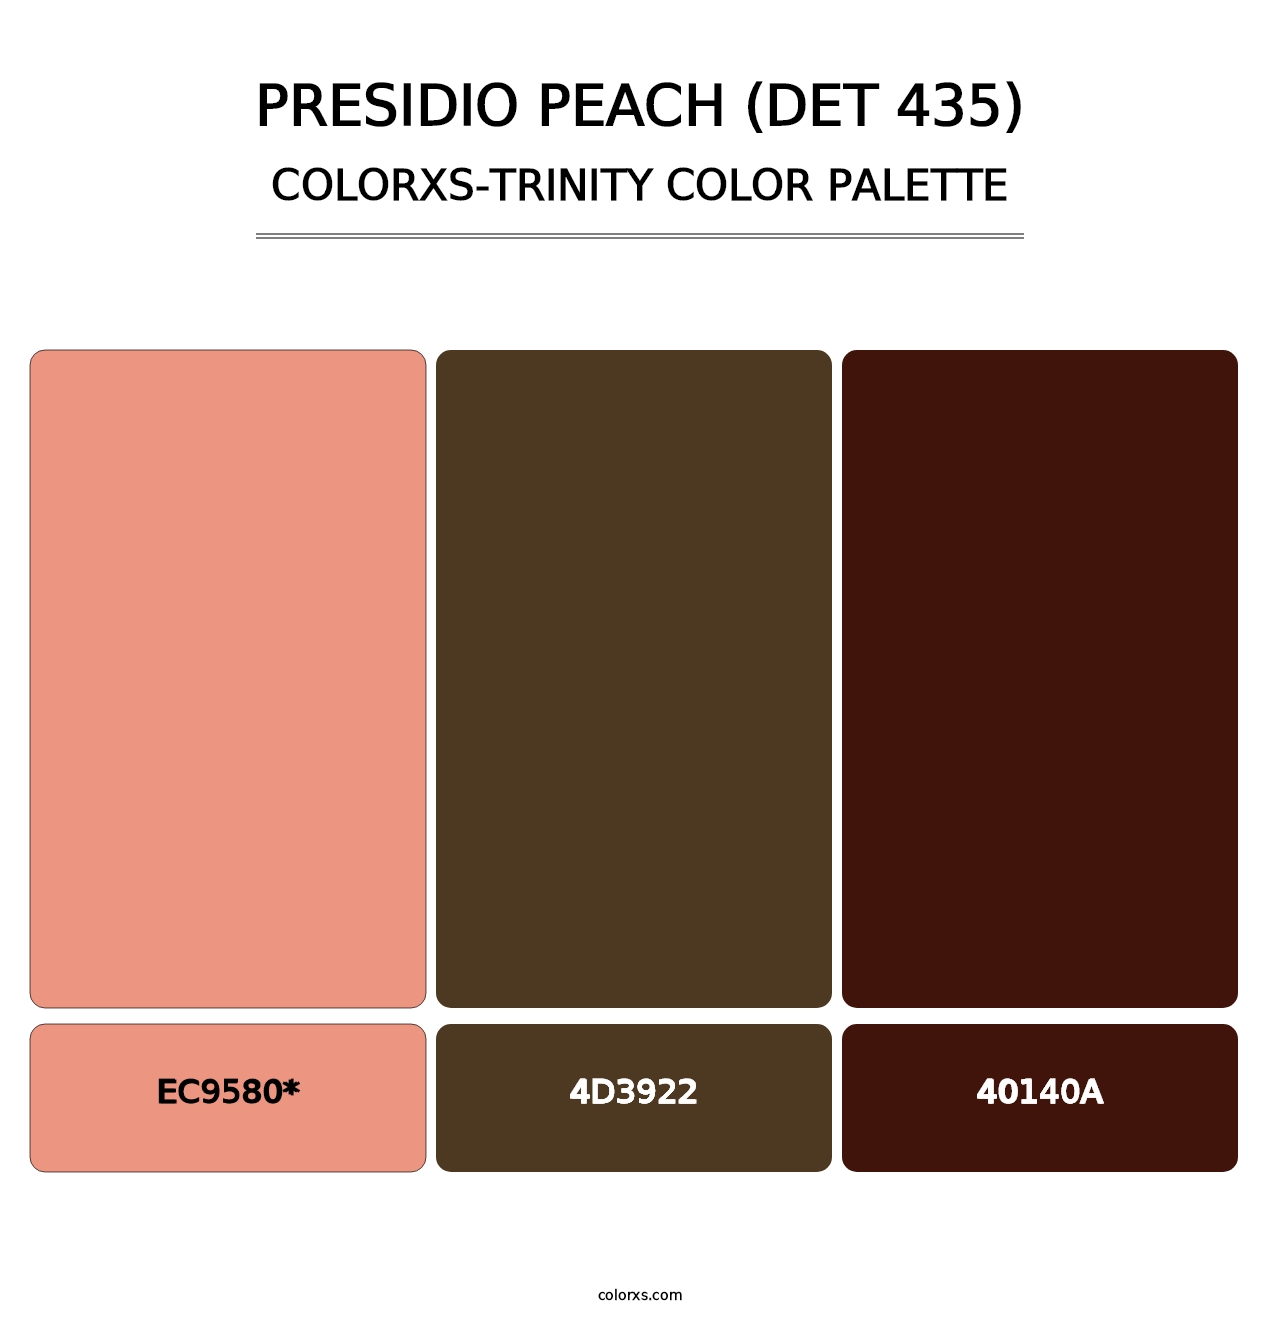 Presidio Peach (DET 435) - Colorxs Trinity Palette